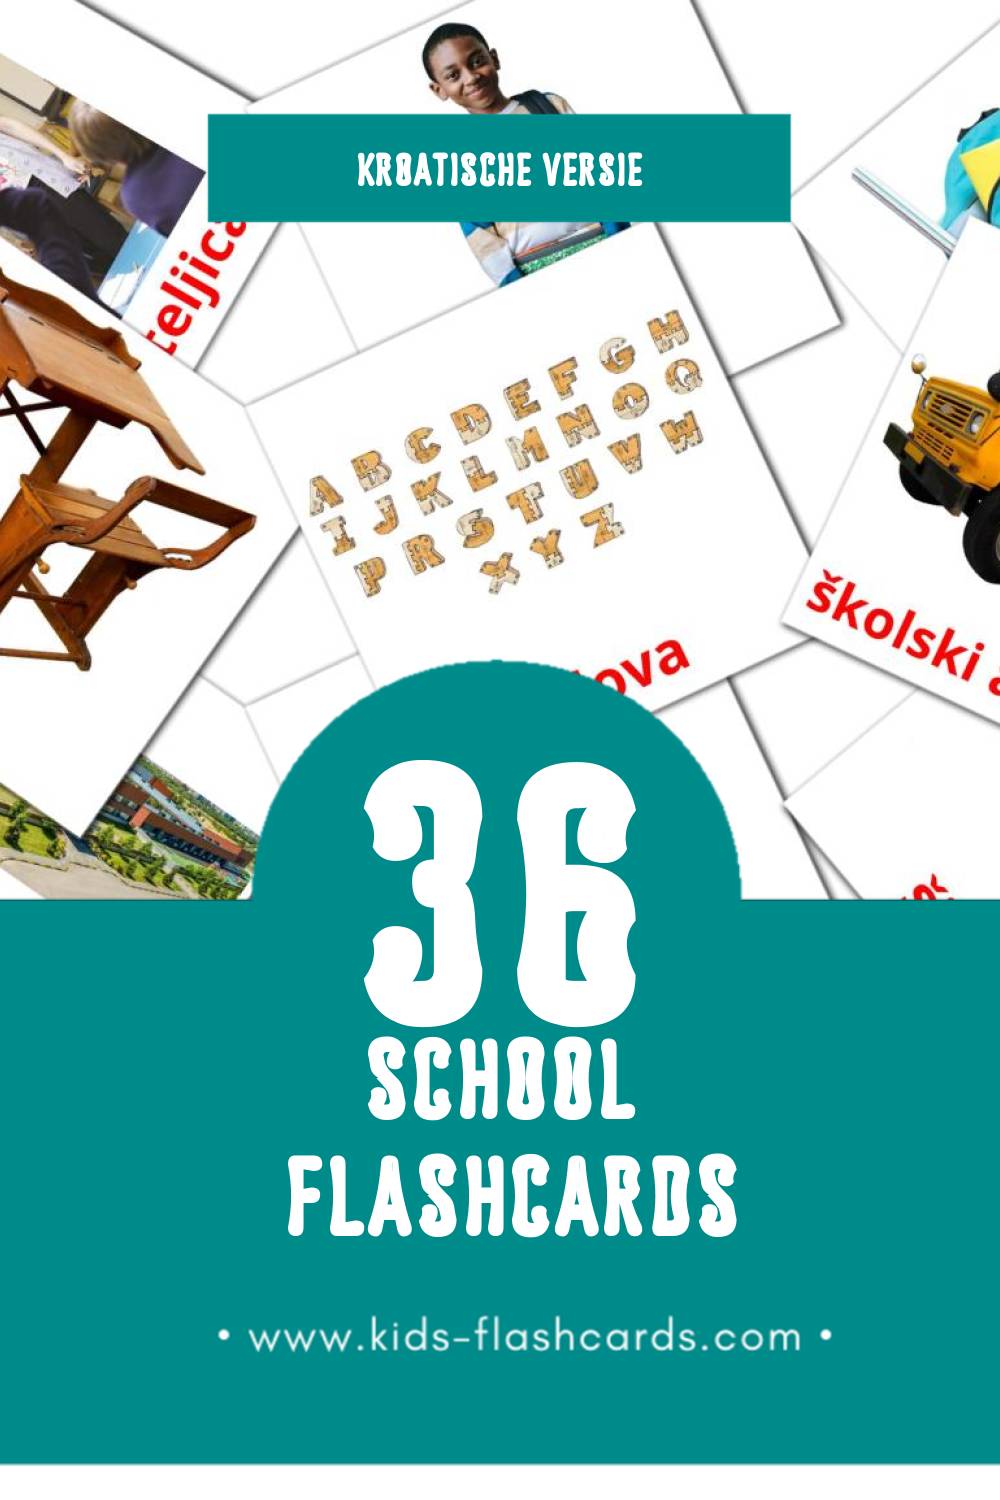 Visuele škola Flashcards voor Kleuters (36 kaarten in het Kroatisch)